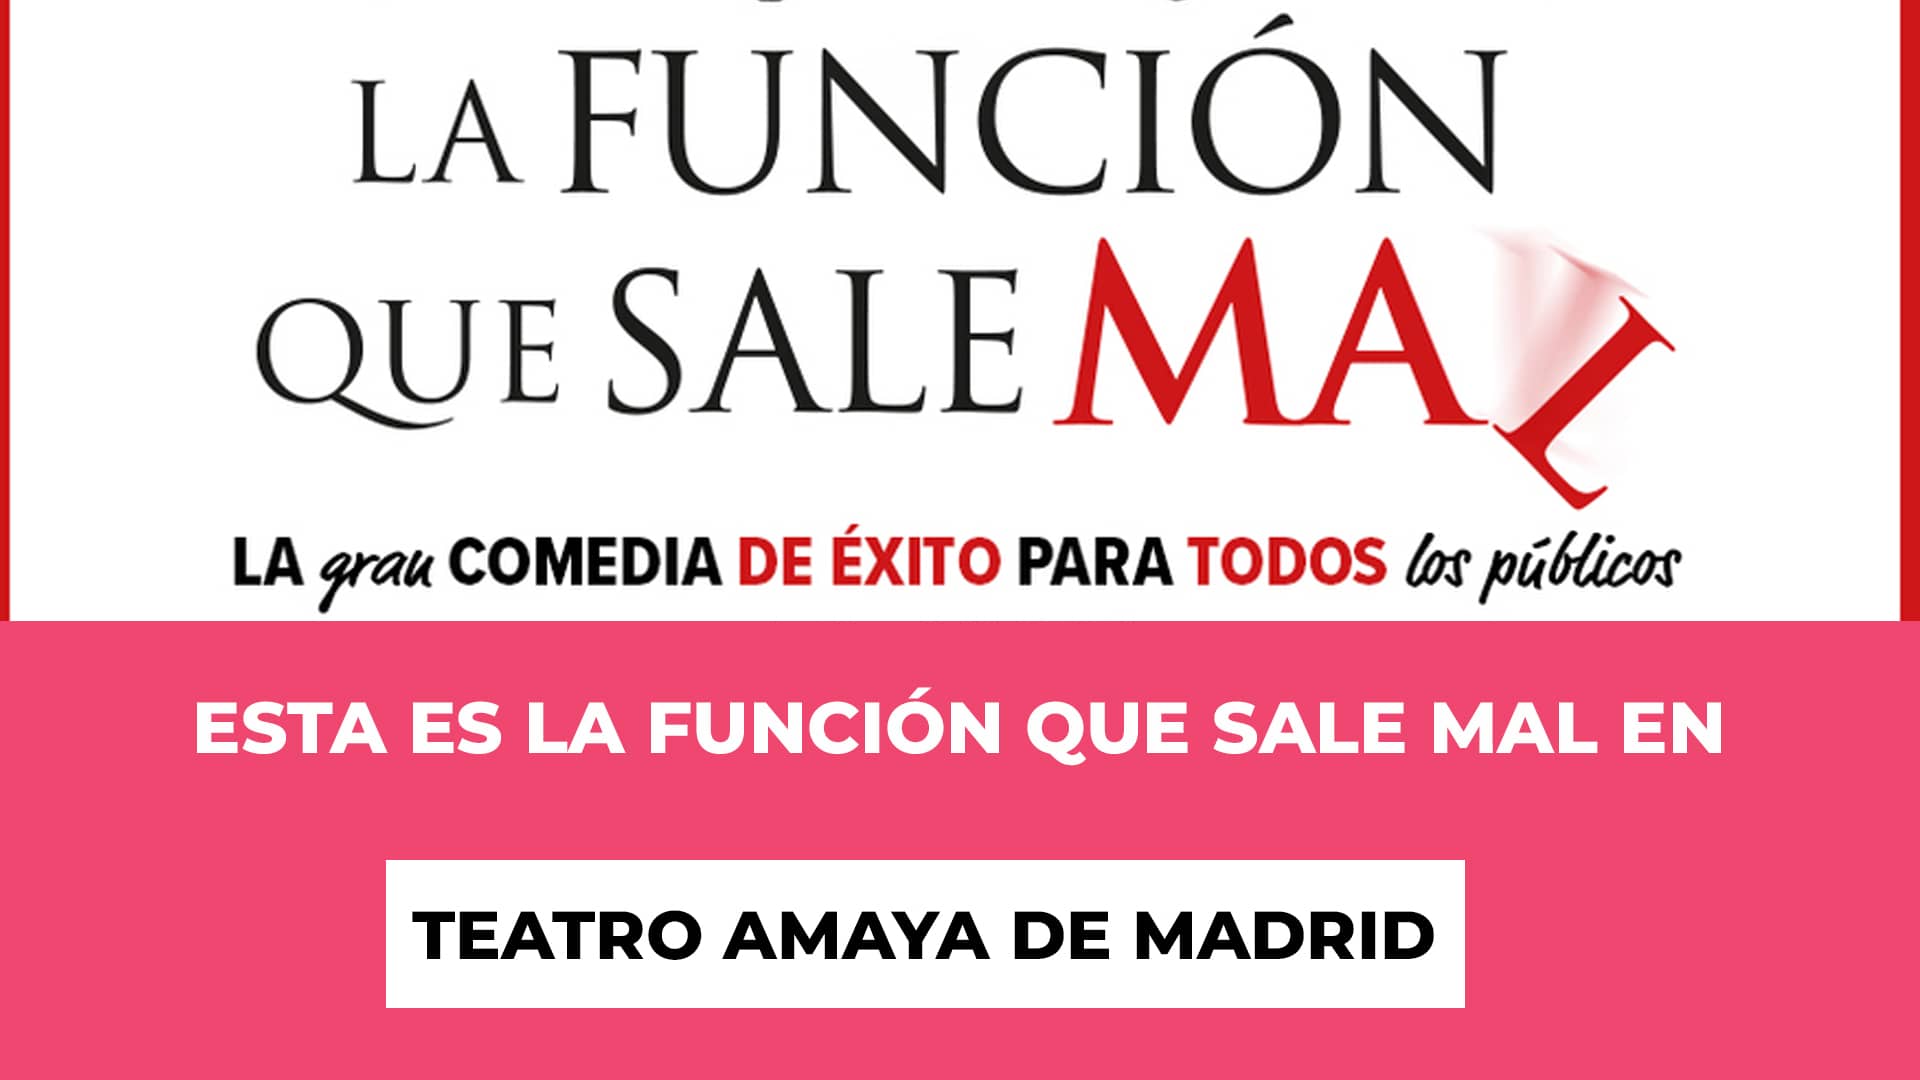 Esta es La Función Que Sale Mal en Teatro Amaya de Madrid - Más de 8 millones de espectadores - Dias y fechas - Precios de las entradas